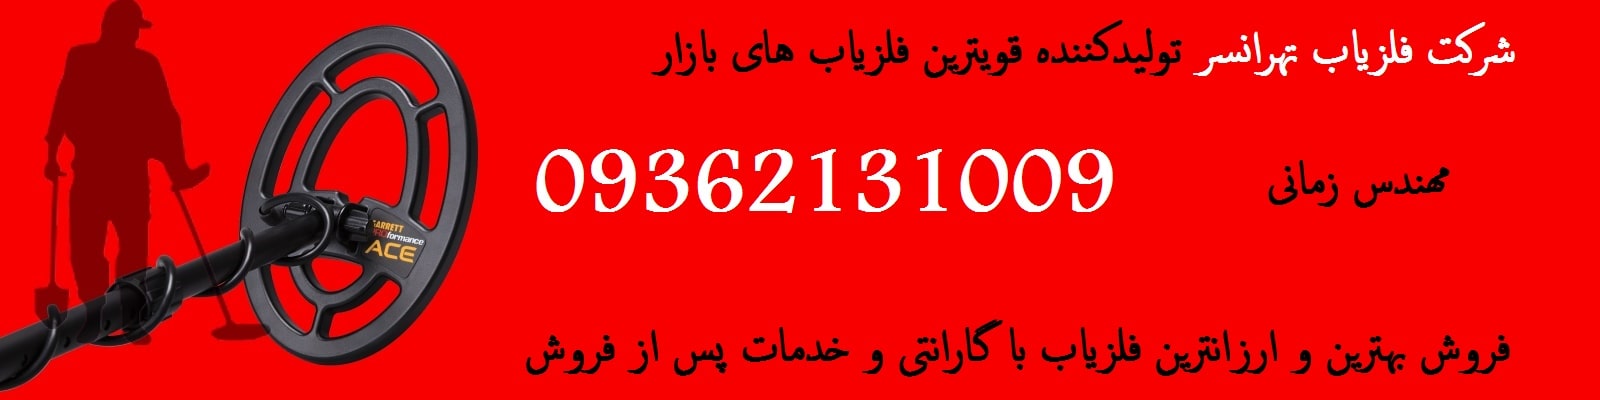 فلزیاب خارجی ارزان در نمایندگی فلزیاب تهران